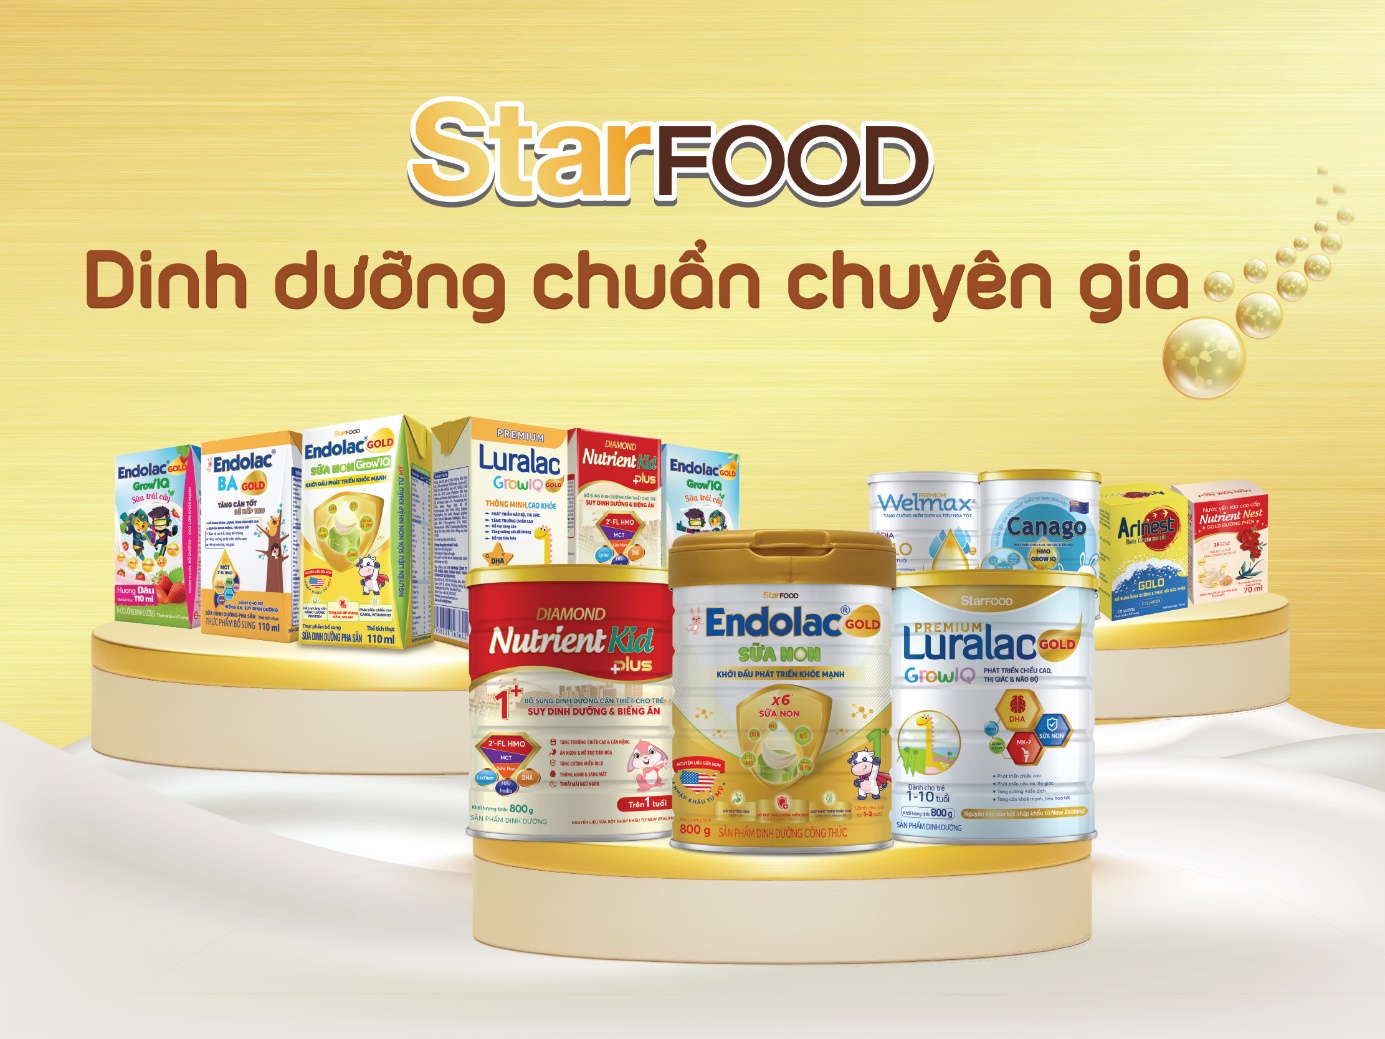 Bộ sản phẩm dinh dưỡng của StarFOOD dành cho mọi lứa tuổi